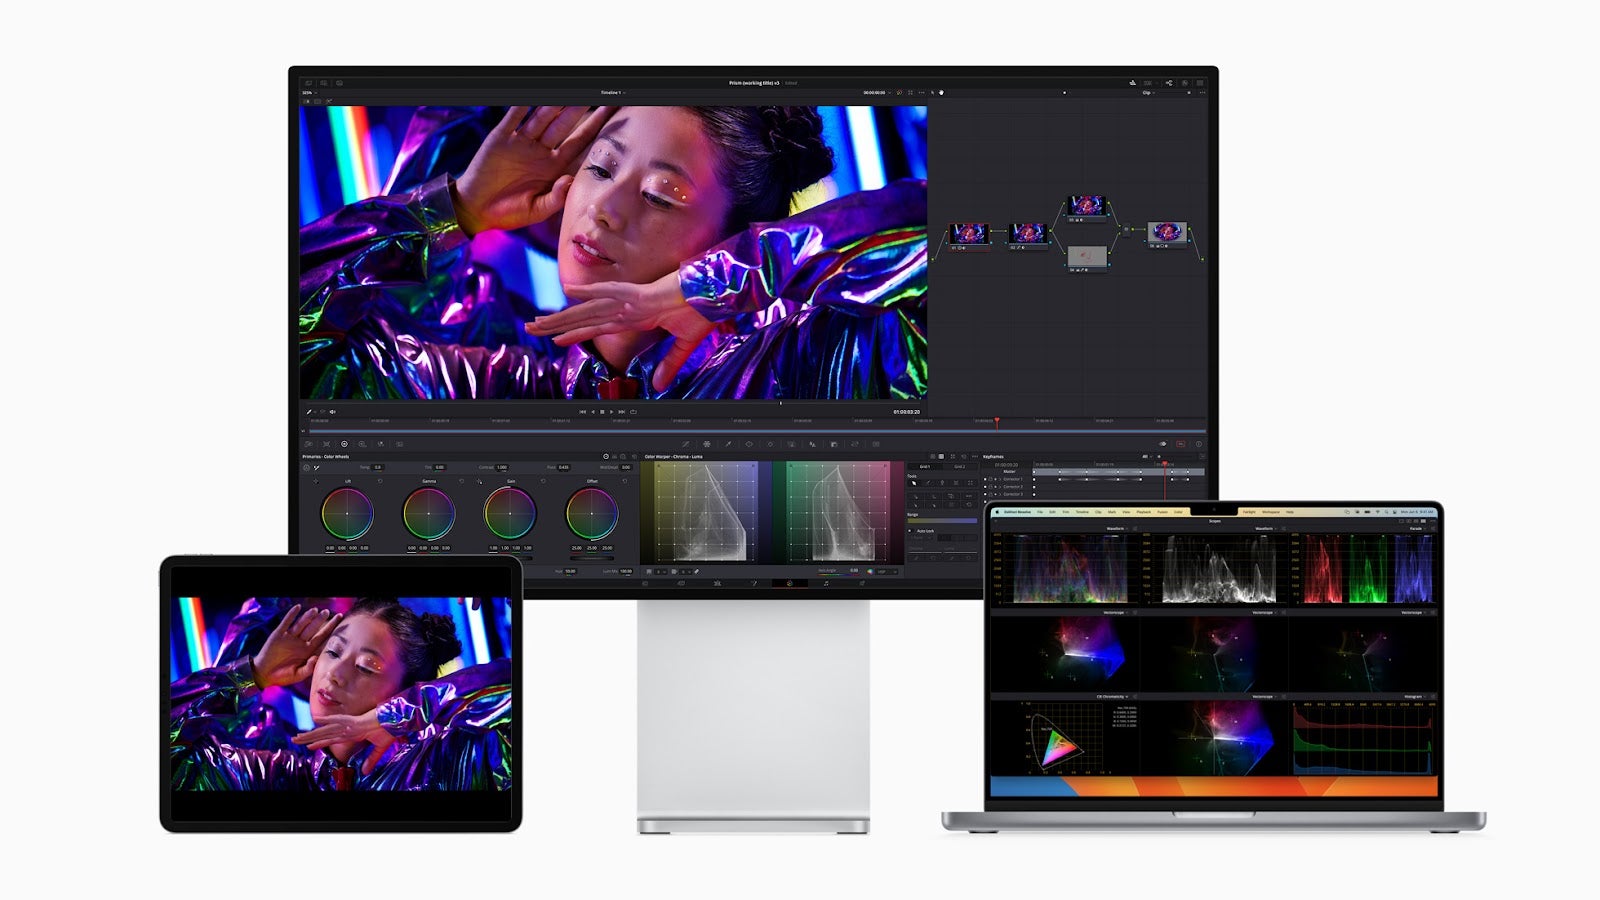 使用12.9英寸的M1 iPad Pro作为颜色精确的参考显示器。